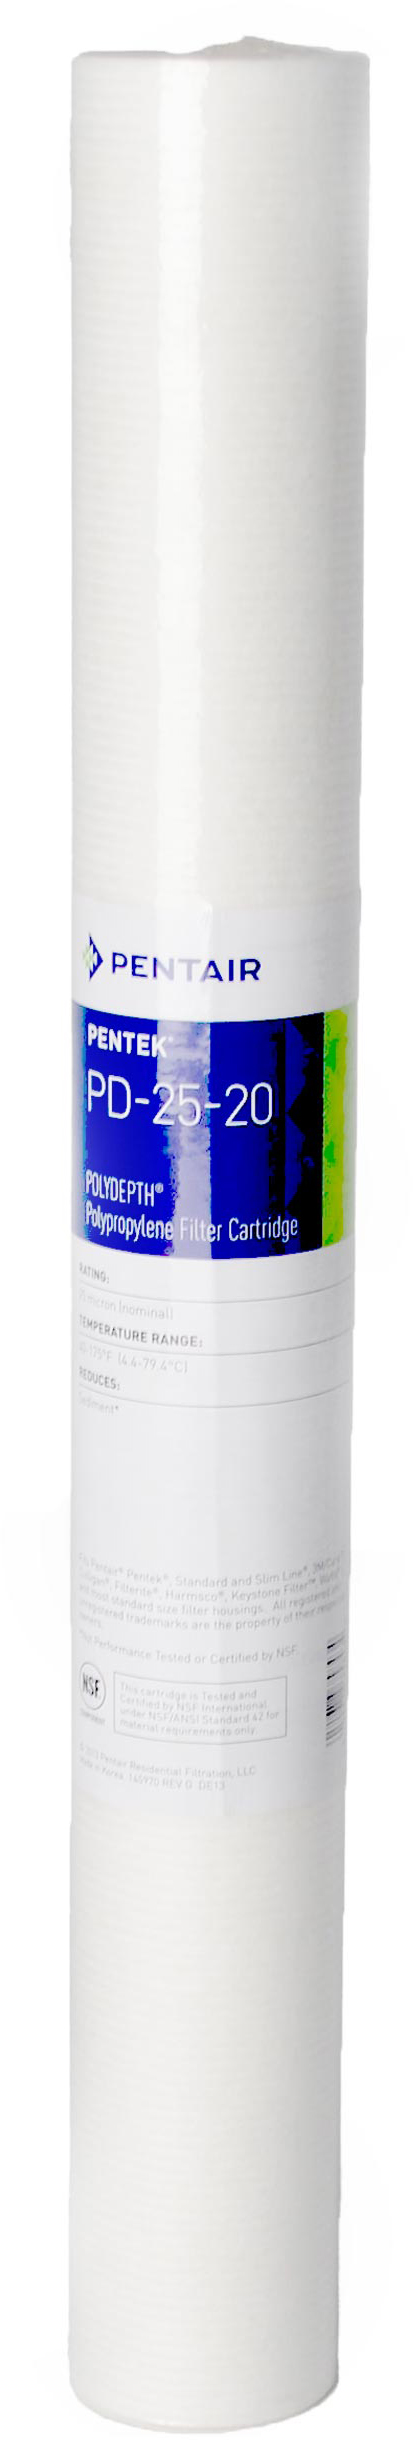 Картридж для проточного фильтра Pentek PD-5-20 Polydepth (155756-43)